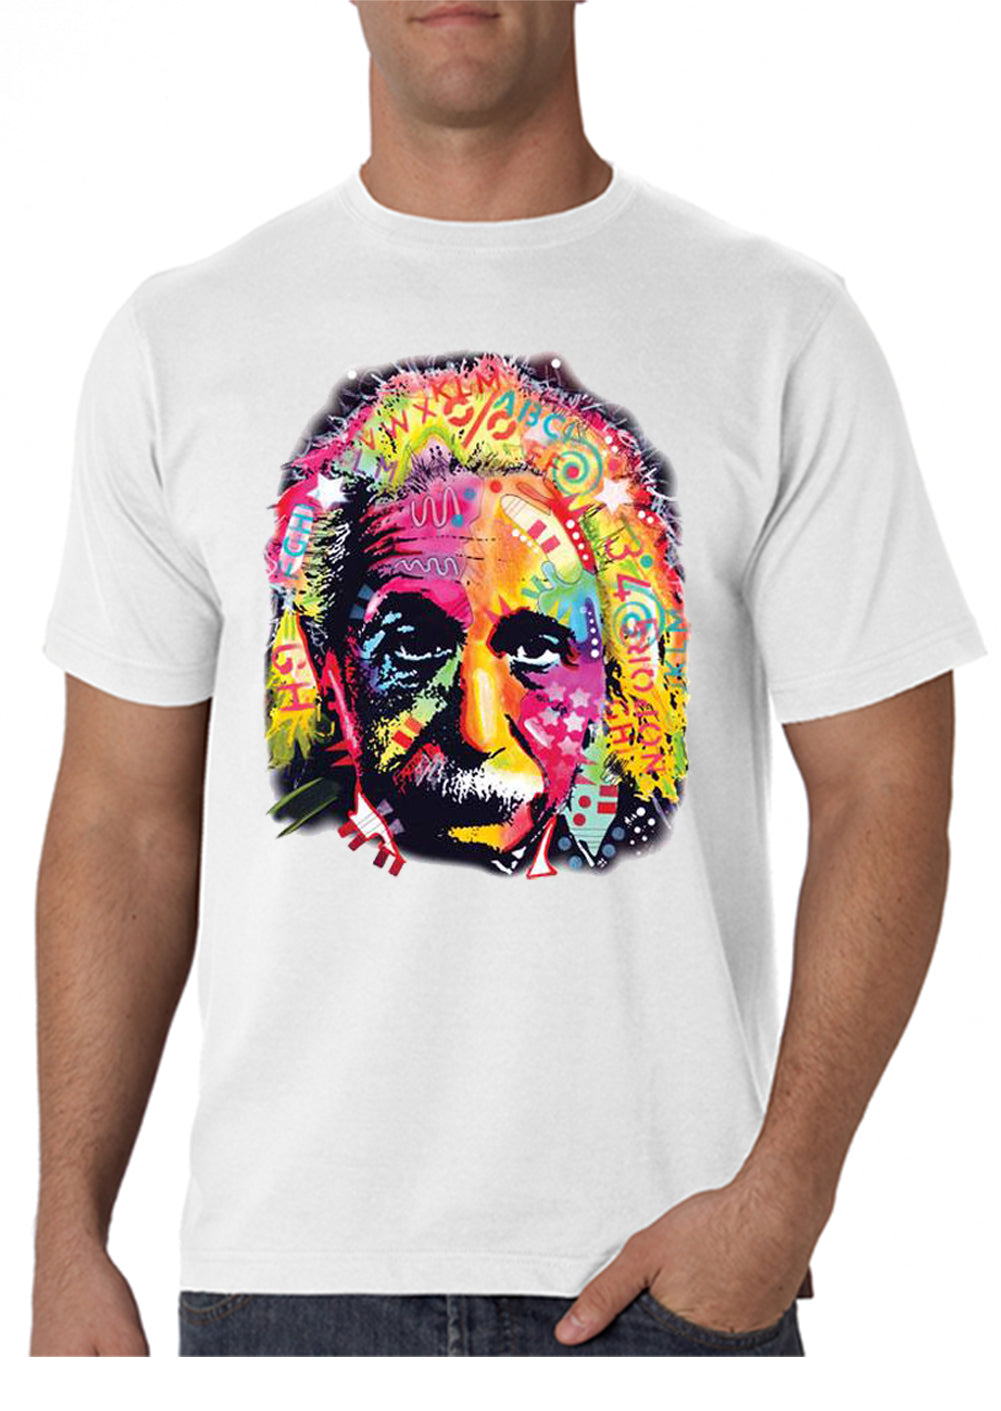 New mp t-shirt - Exclusive texture Albert Einstein 